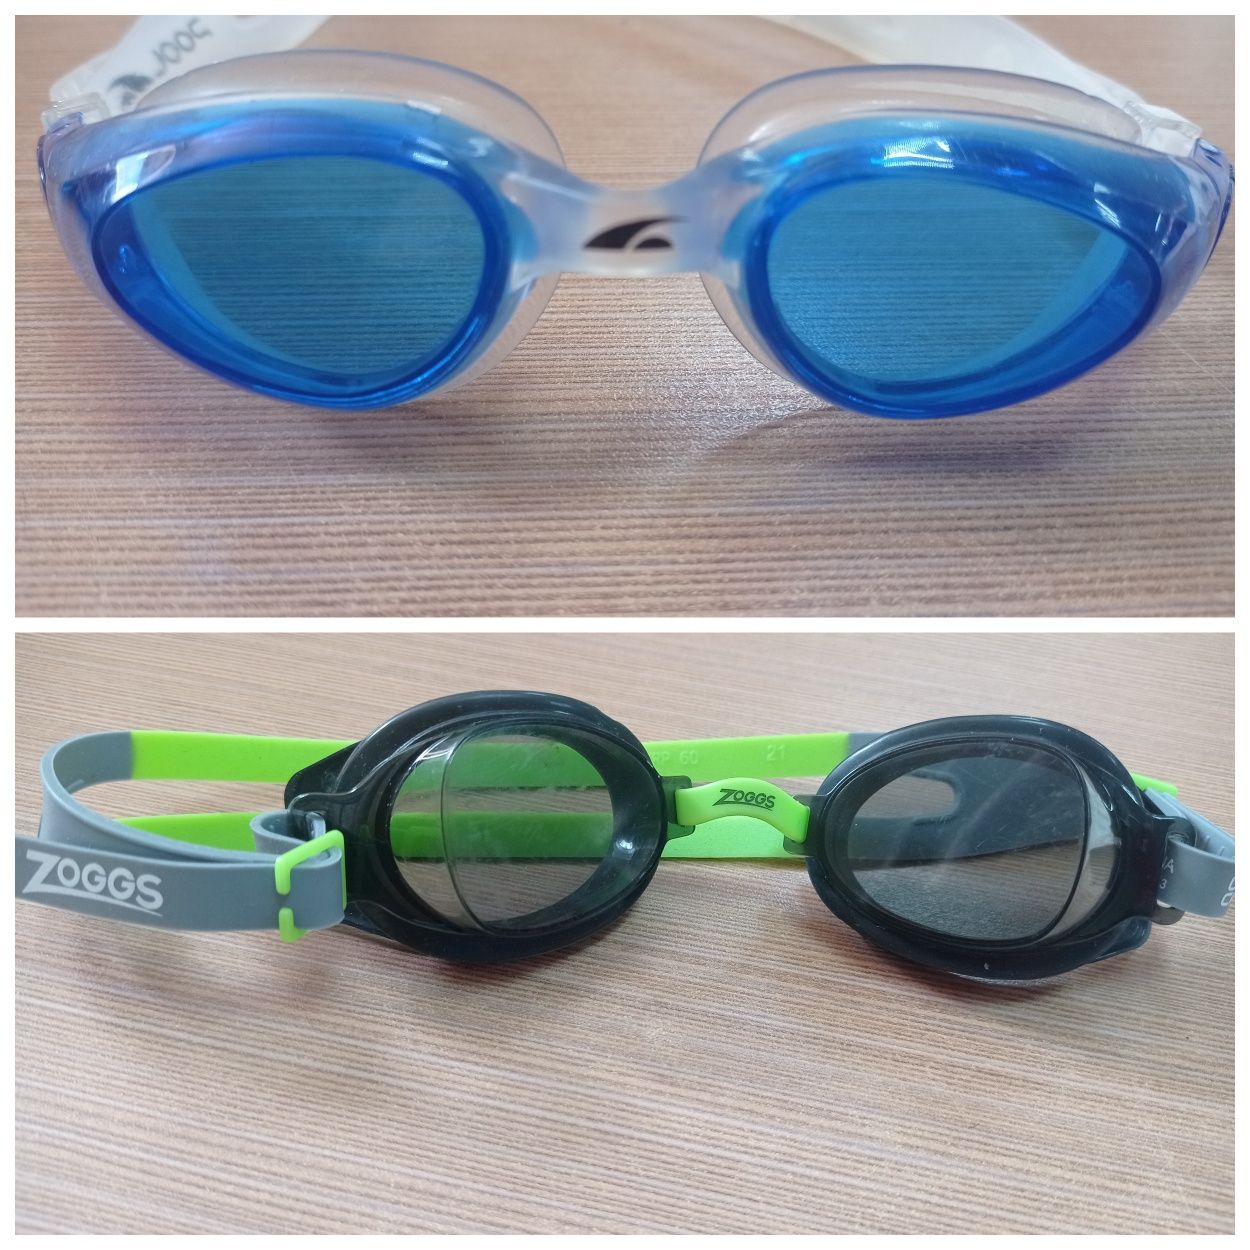 Окуляри очки для плавания